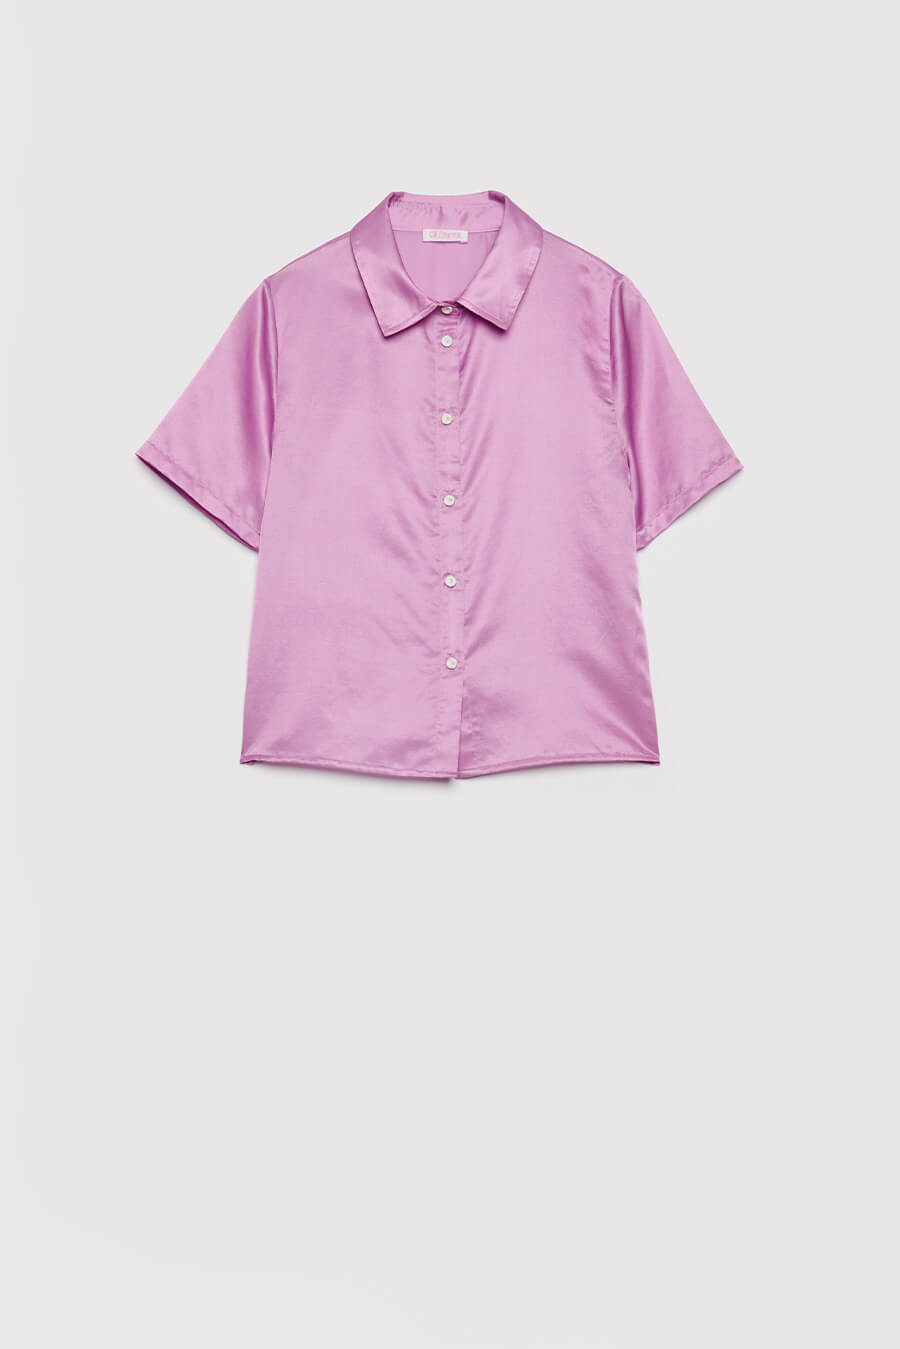 Chimera Sleepwear Gwen Shirt